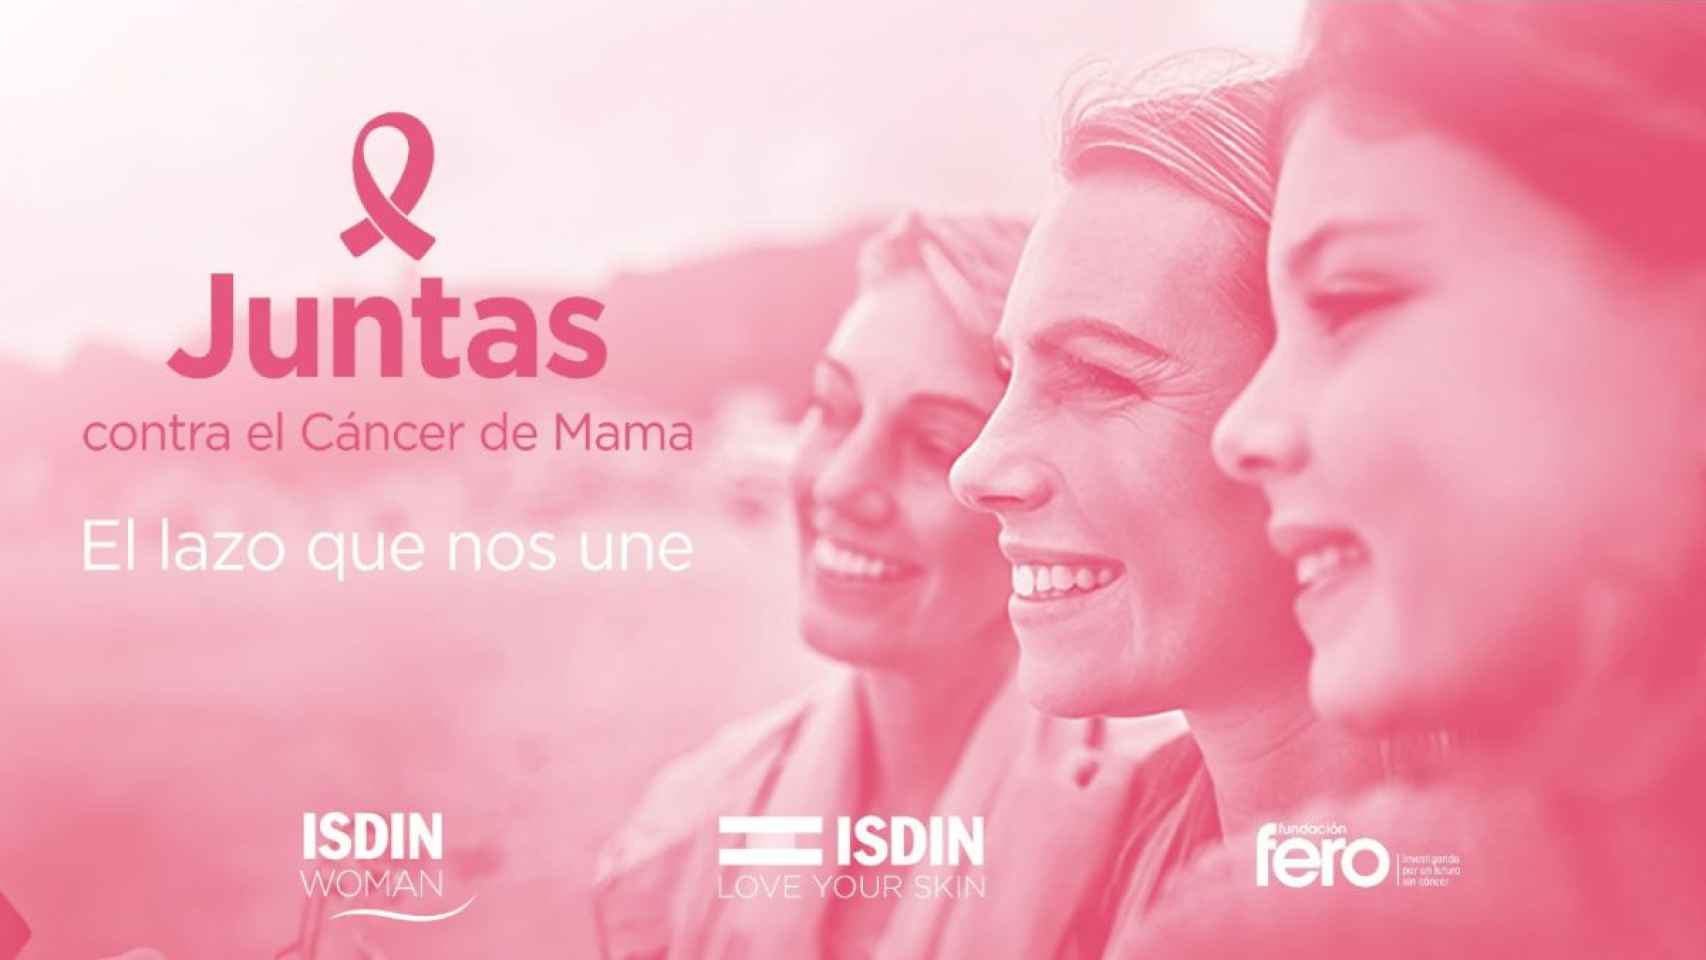 ISDIN colabora en la lucha contra el cáncer de mama con la Fundación FERO en la campaña 'JUNTAS'